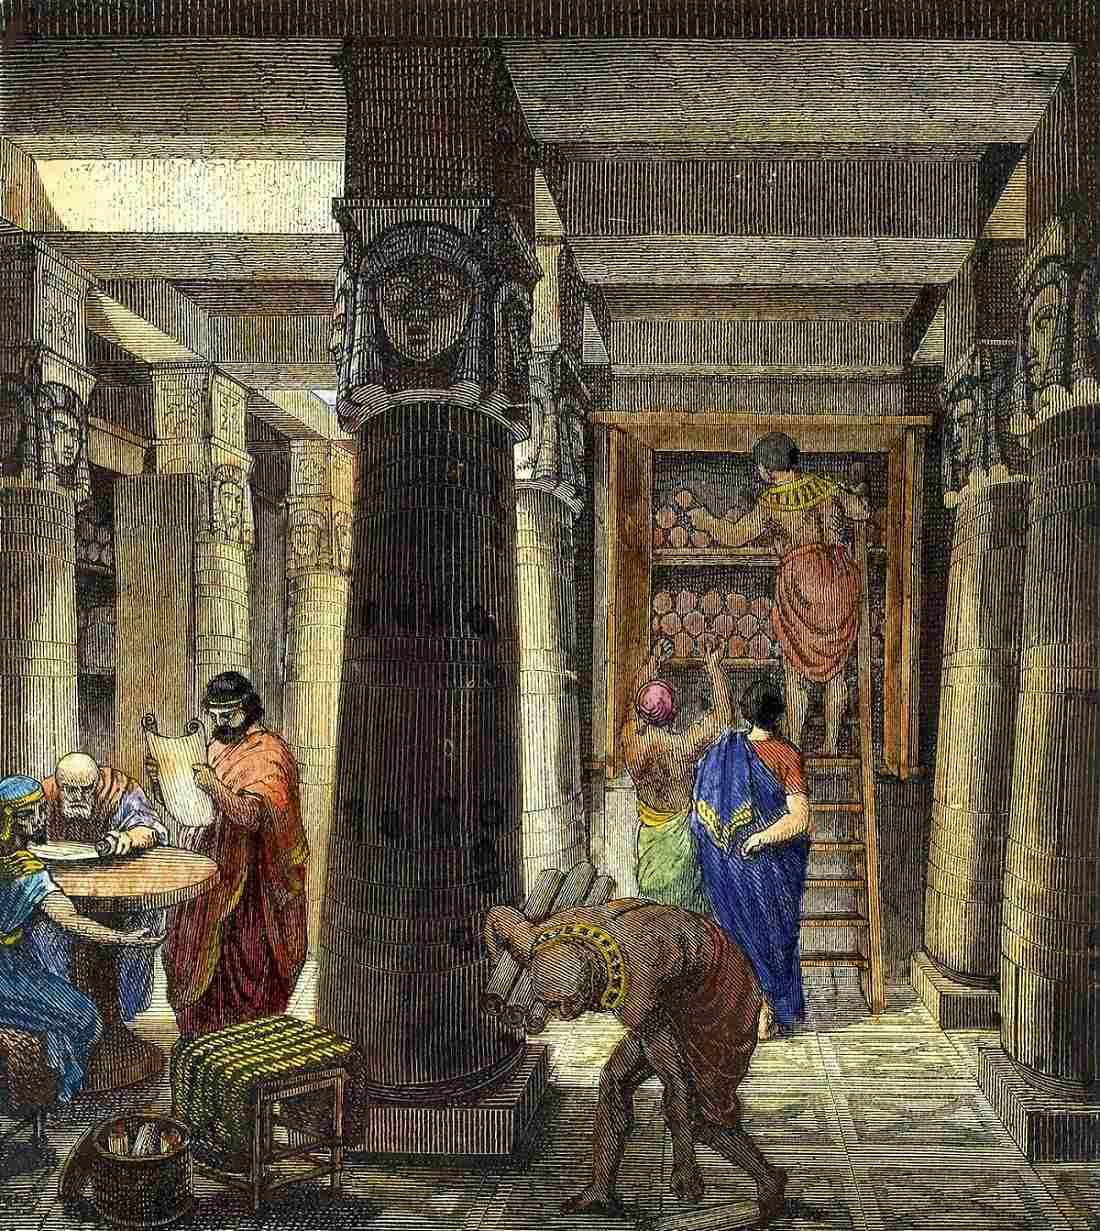 D'Bibliothéik vun Ashurbanipal: Déi eelst bekannte Bibliothéik déi d'Bibliothéik vun Alexandria inspiréiert huet 2